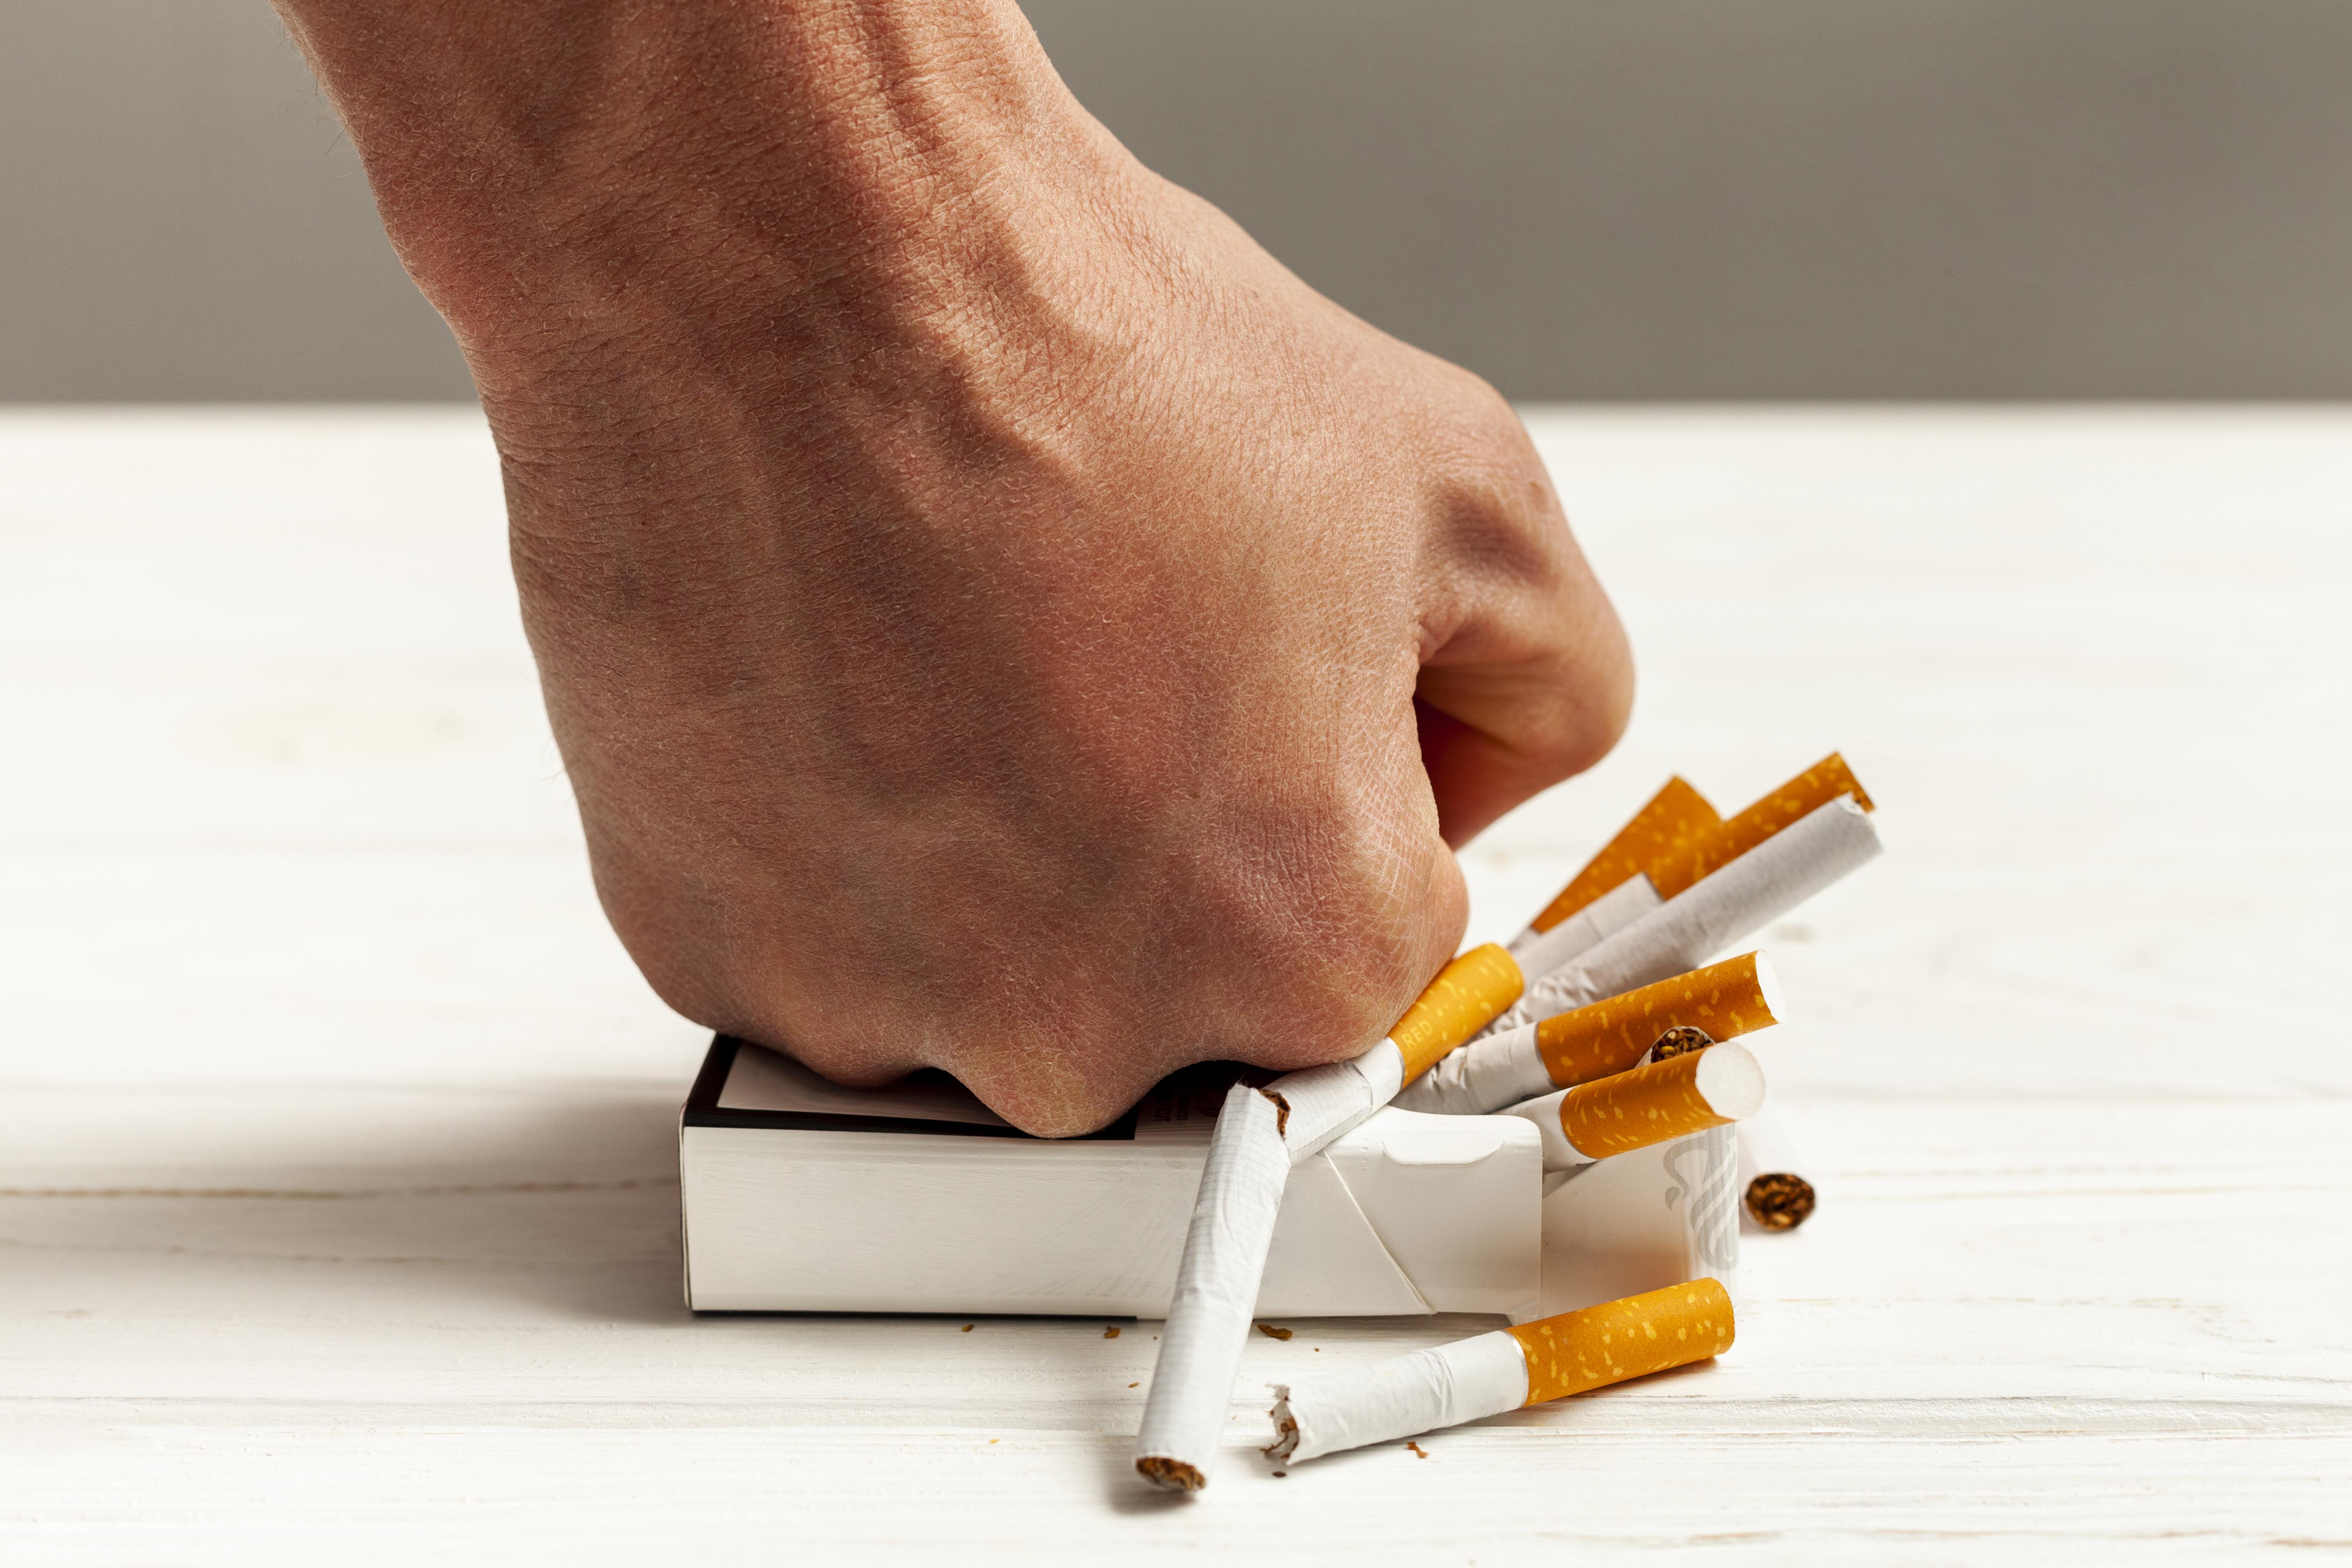 Что лучше для табака: самокрутки или гильзы для сигарет? - магазин для курильщиков DUDA